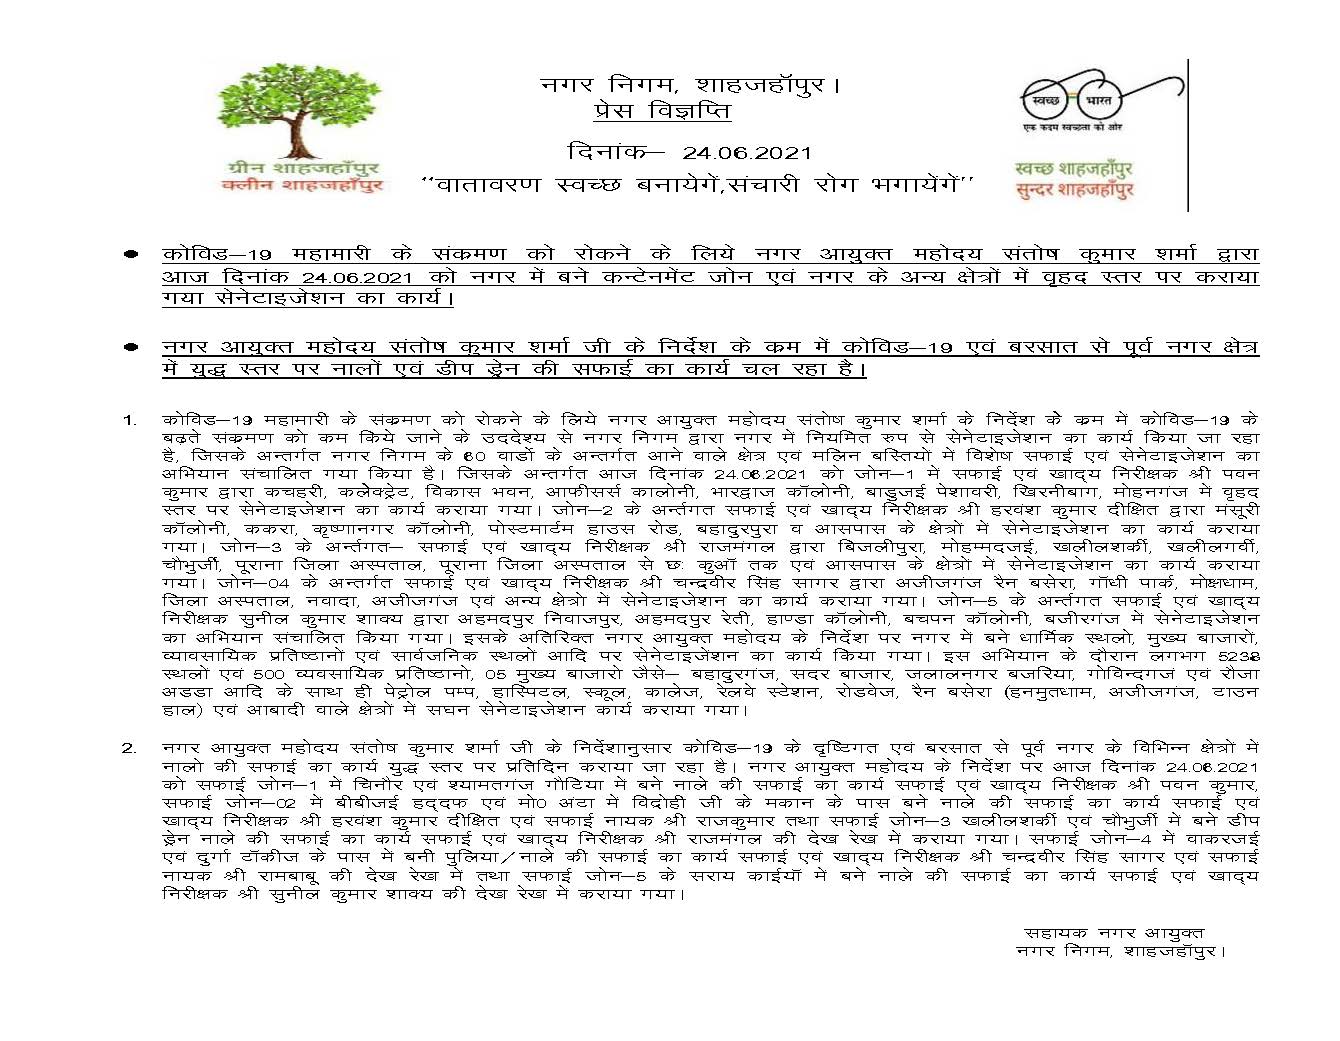 news 24-06-2021 – कोविड की रोकथाम हेतु नगर आयुक्त महोदय द्वारा दिनांक 24-06-2021 को कंटेनमेंट जोन में कराया गया सैनिटाइजेशन कार्य।